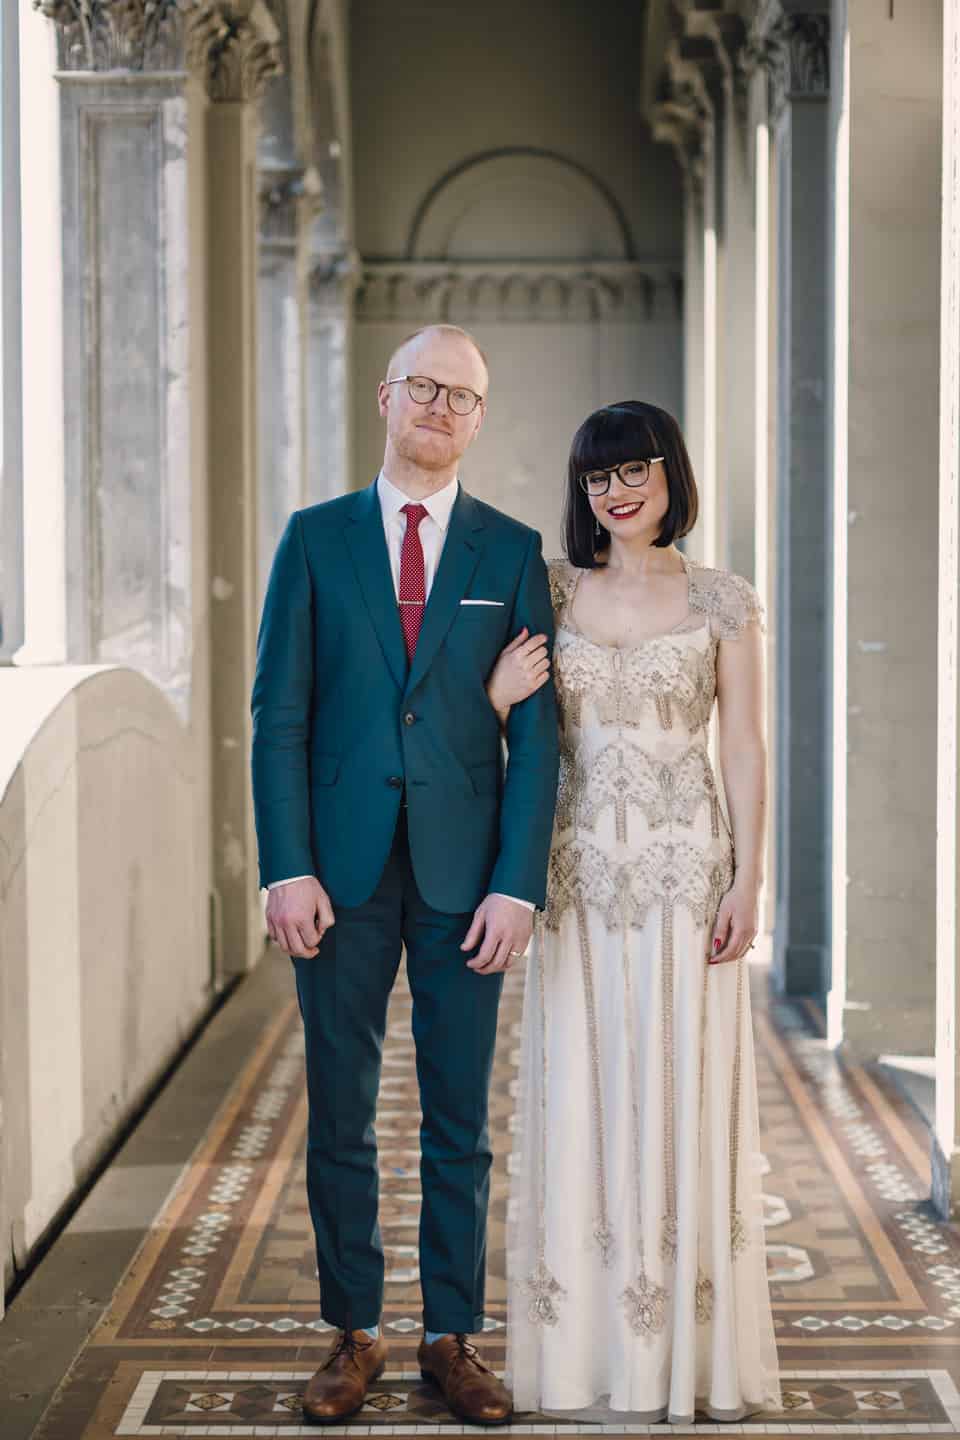 Best wedding dresses of 2015/ Art Deco wedding dress by Gwendolynne